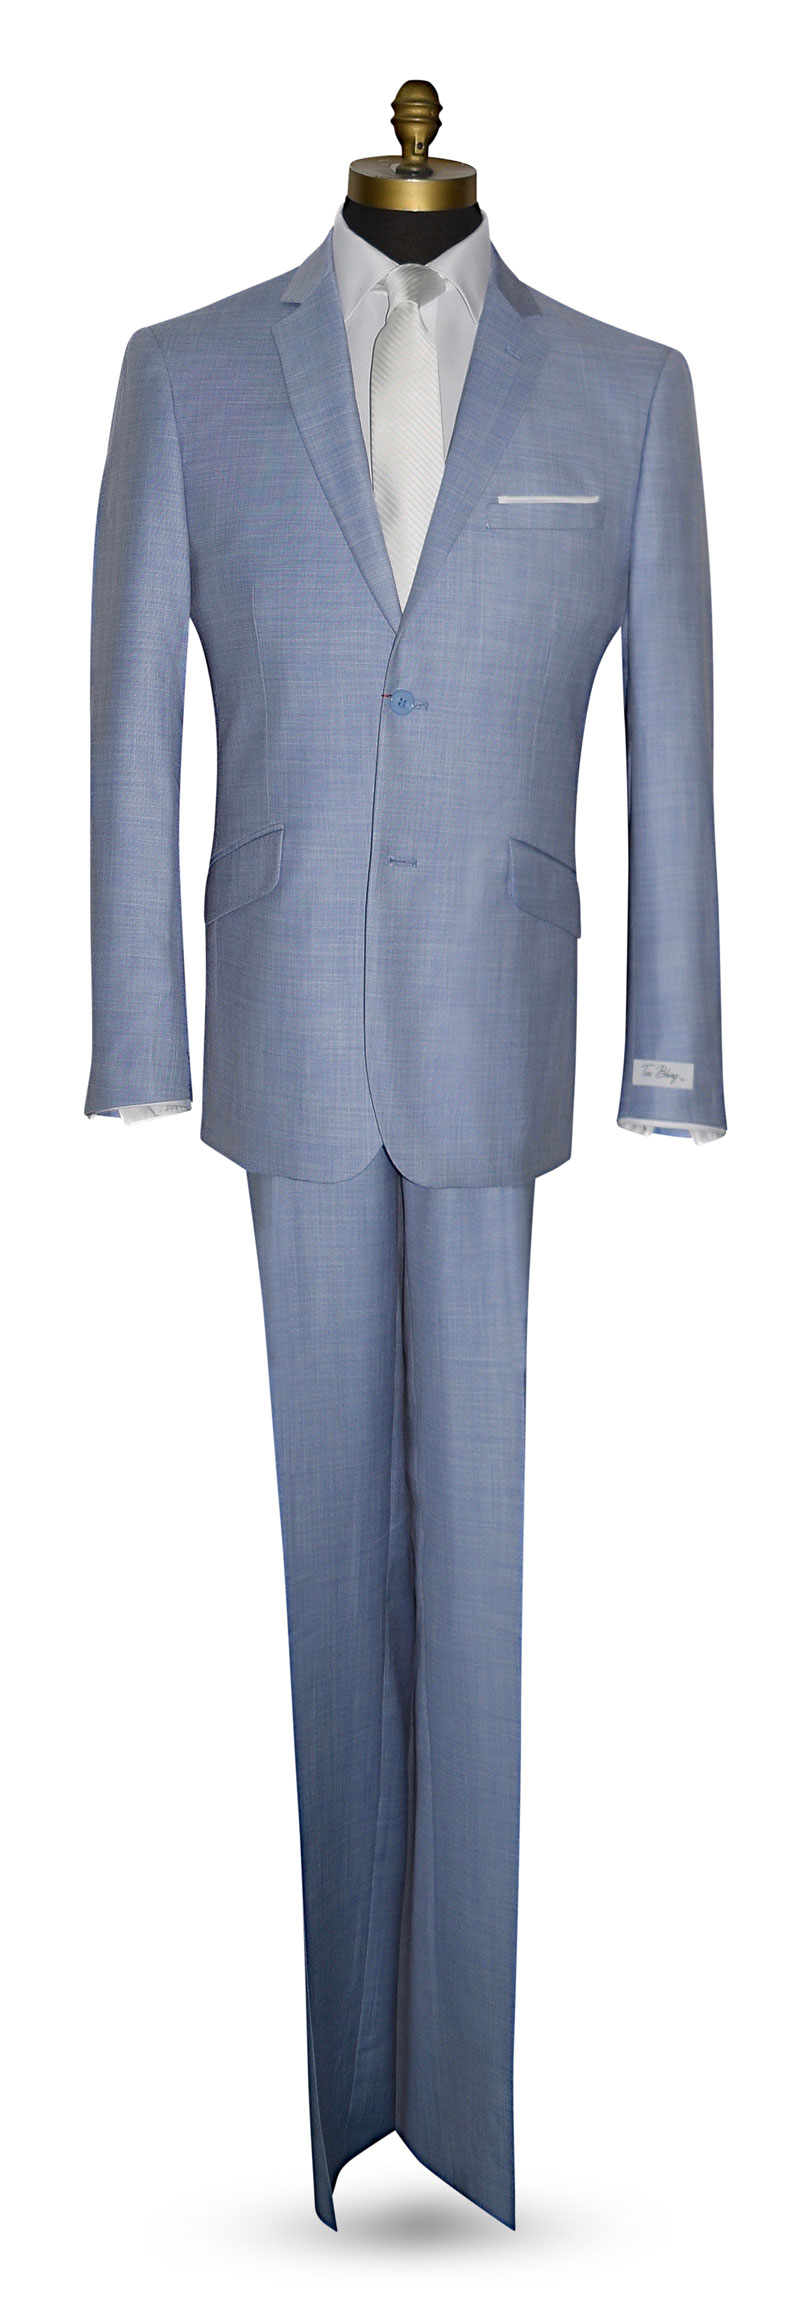 Men's Light Blue Suit Coat and Pants Set